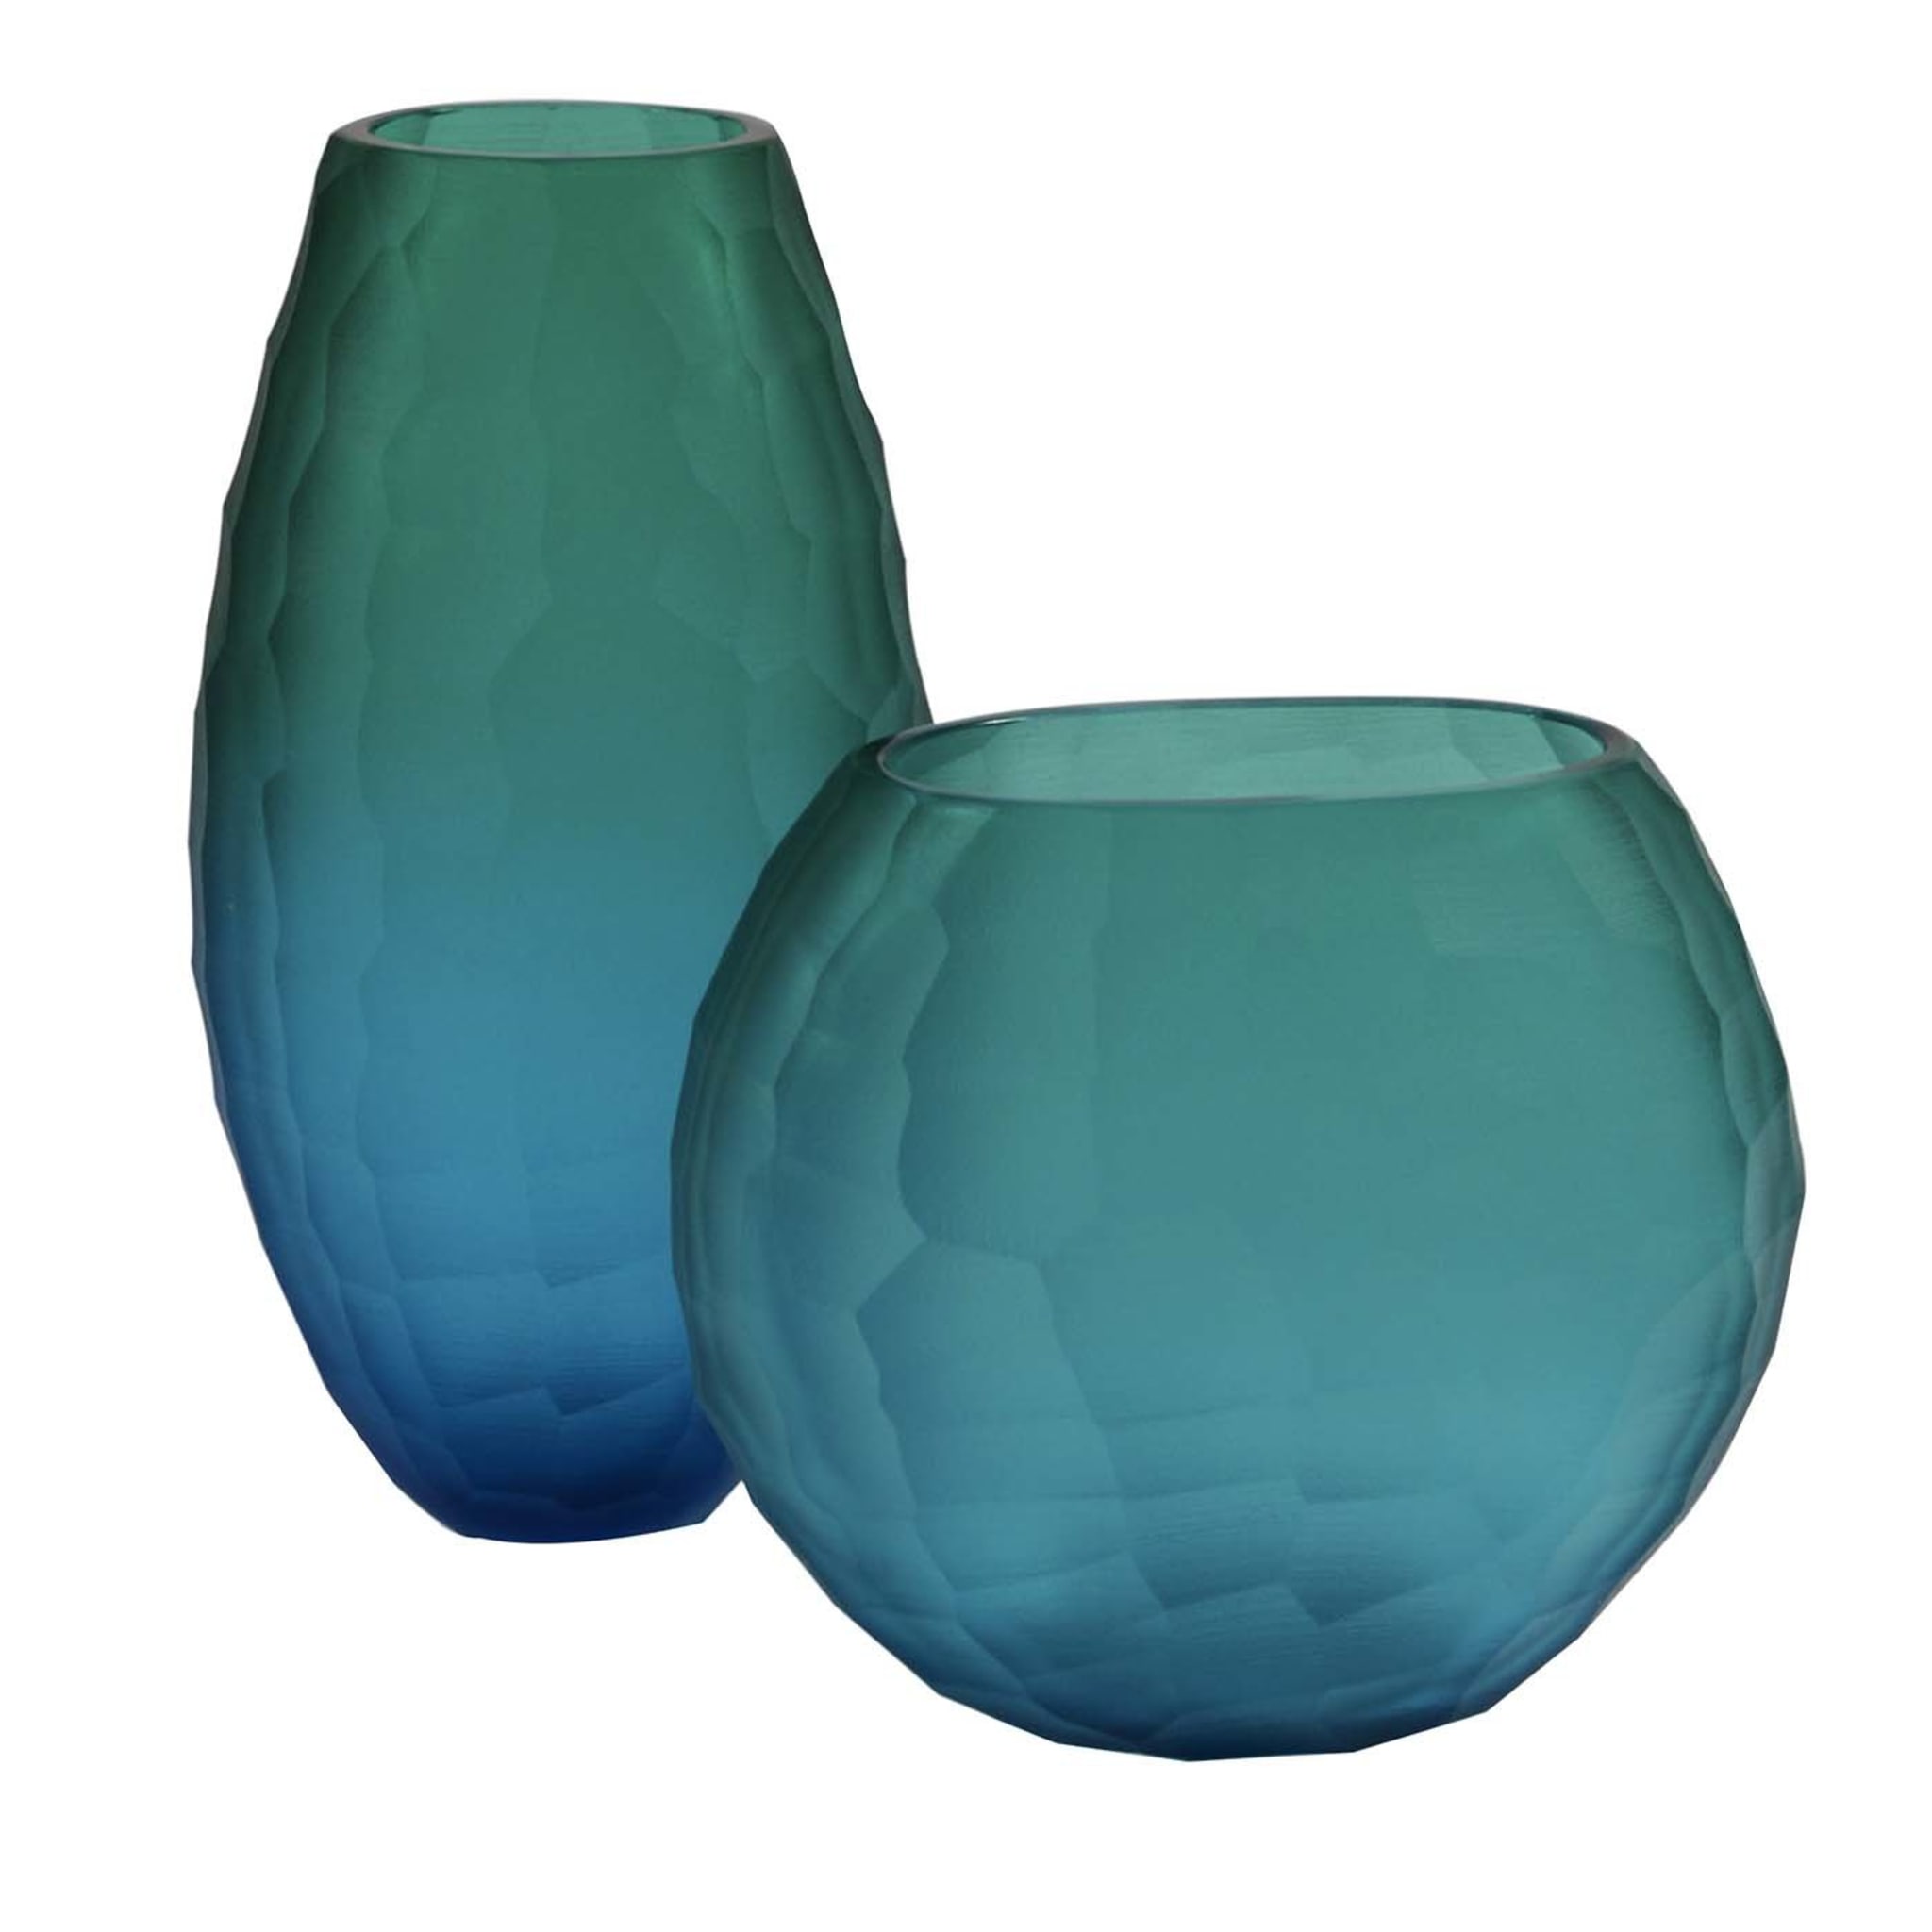 Segretissimi Battuti Set of Two Bluemarine Vases - Main view